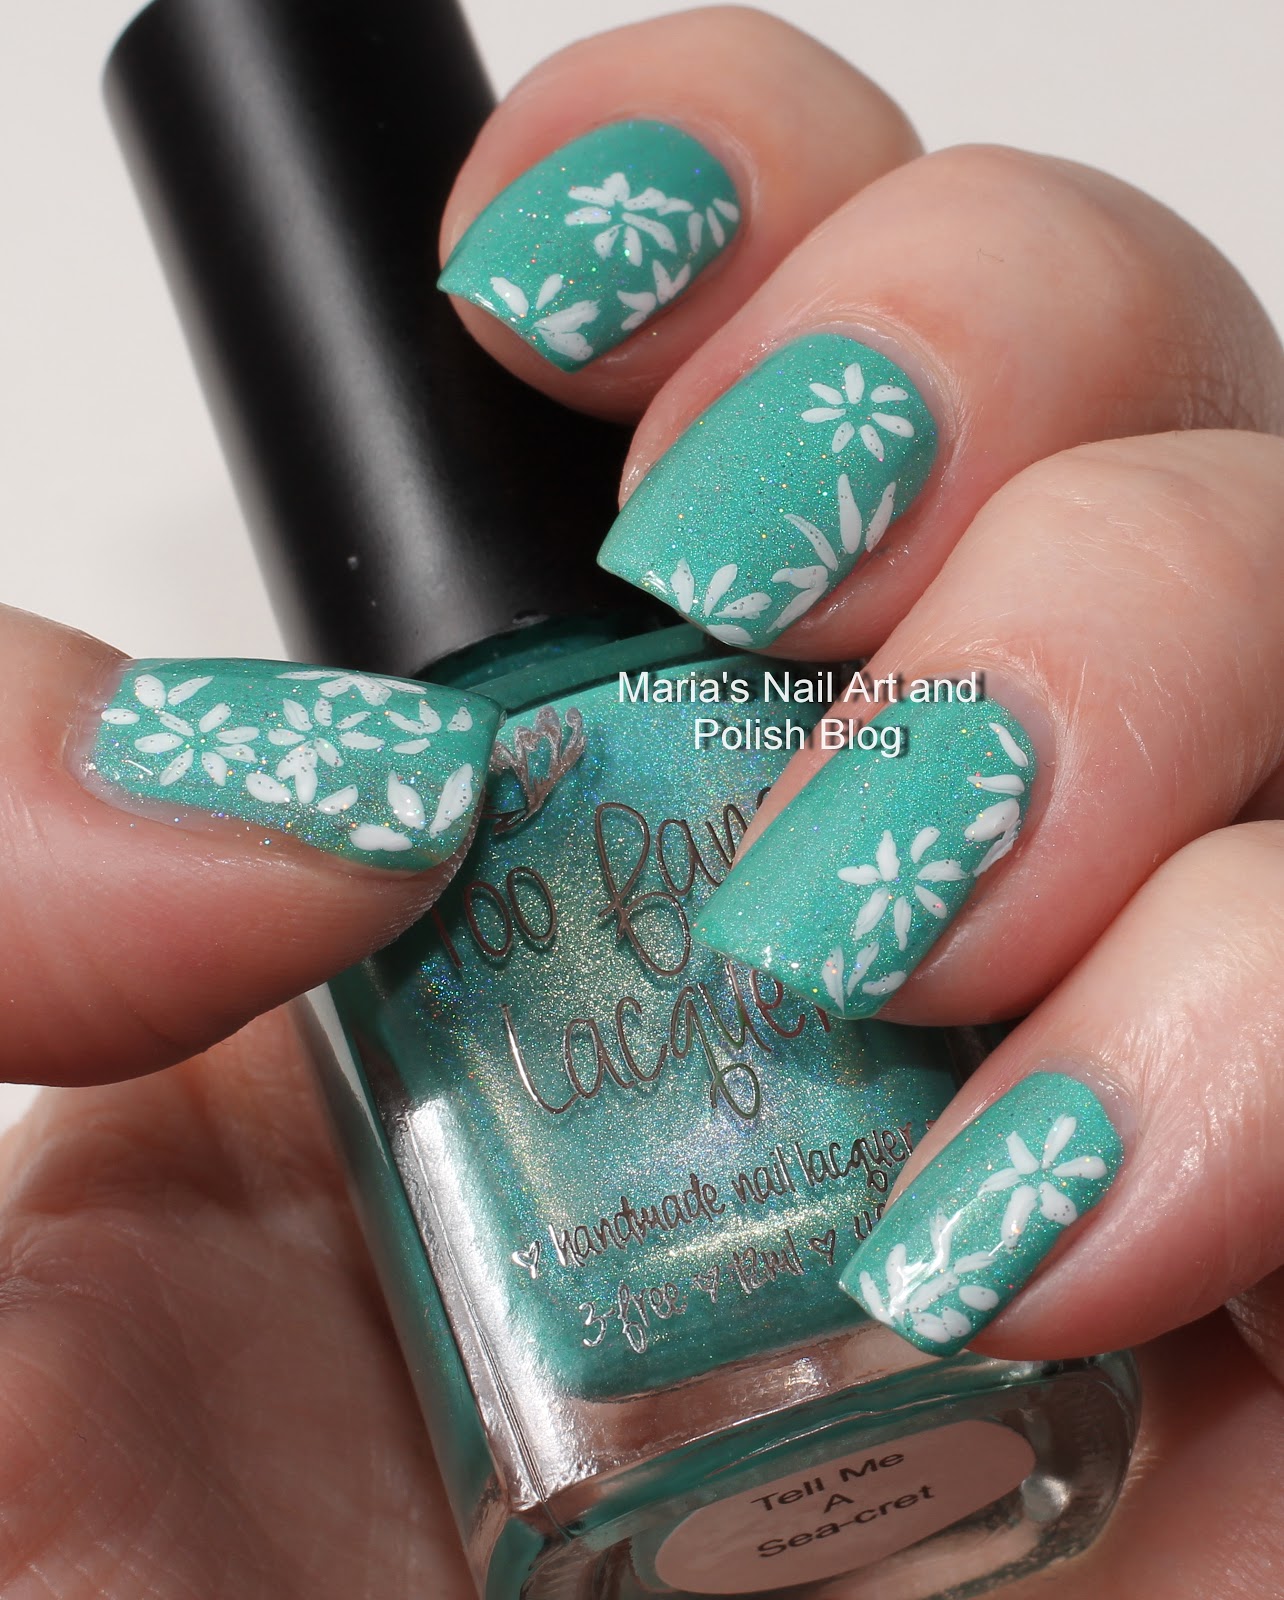 Marias Nail Art and Polish Blog: Daisy nail art